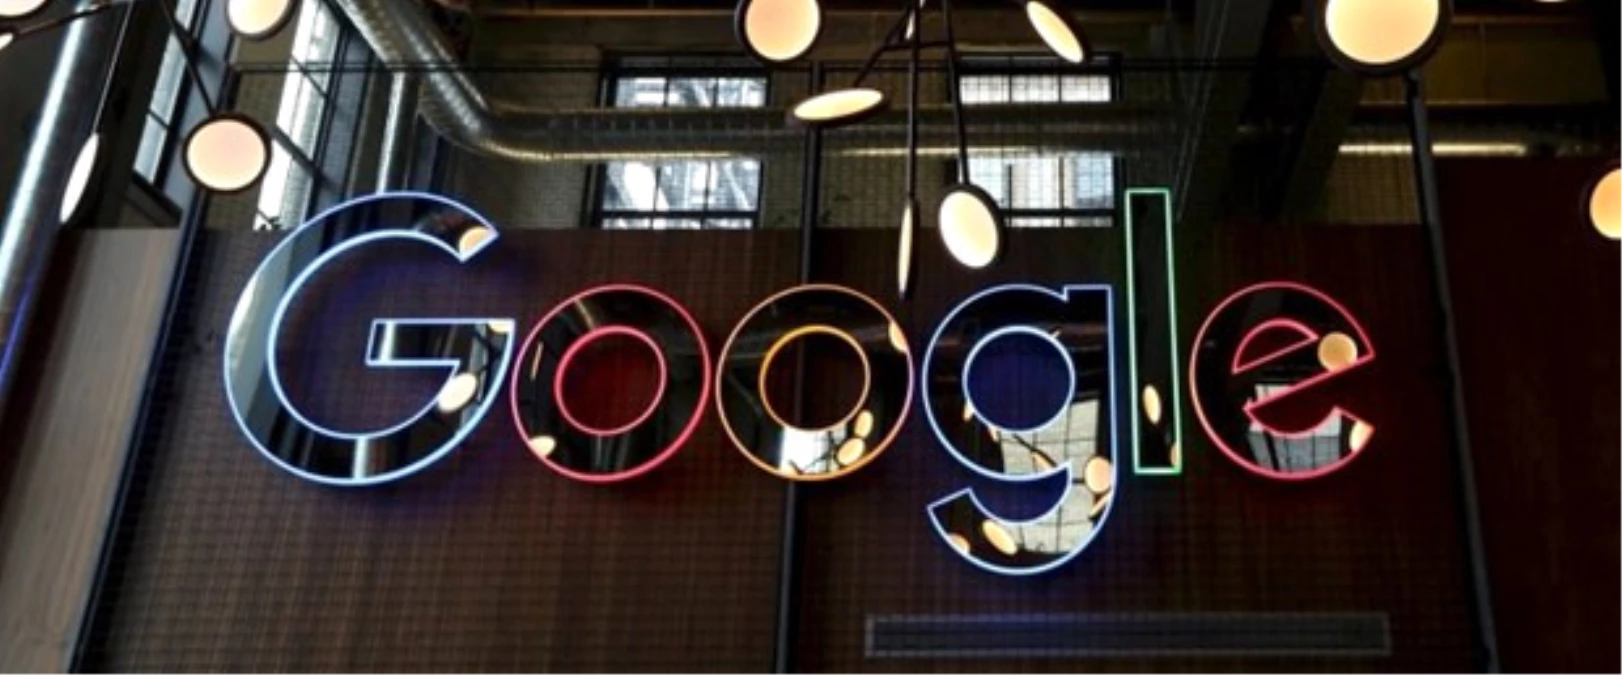 Google Kadınlara Daha Az Maaş Veriyor" İddiası